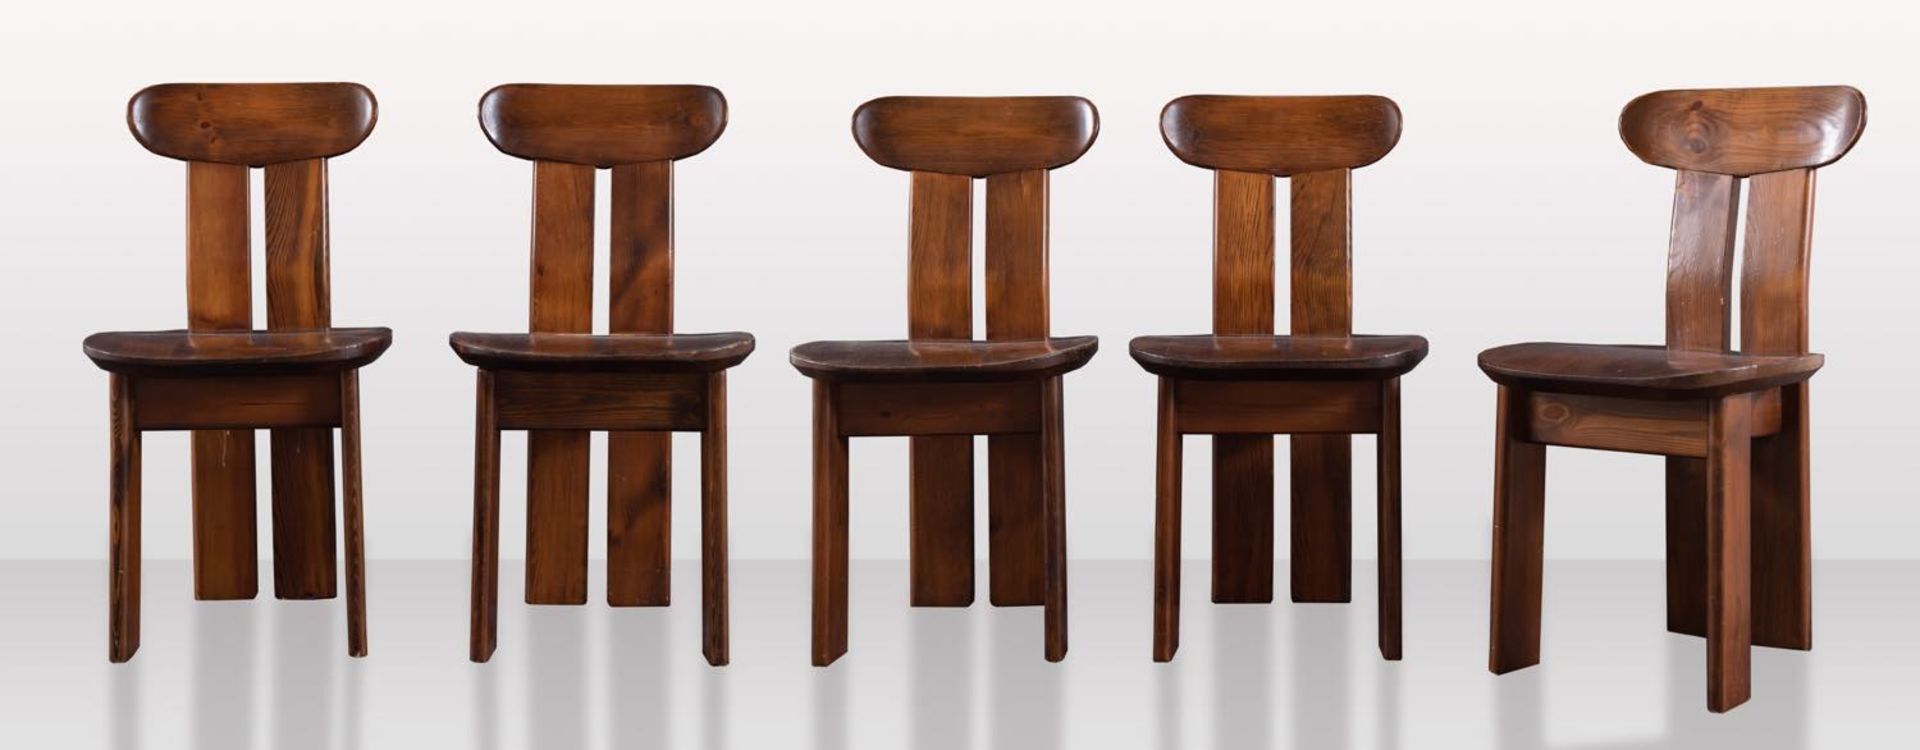 Mario Marenco, attribuito a, Gruppo di cinque sedie, Anni ‘70.In legno sagomato tinto noce, H cm